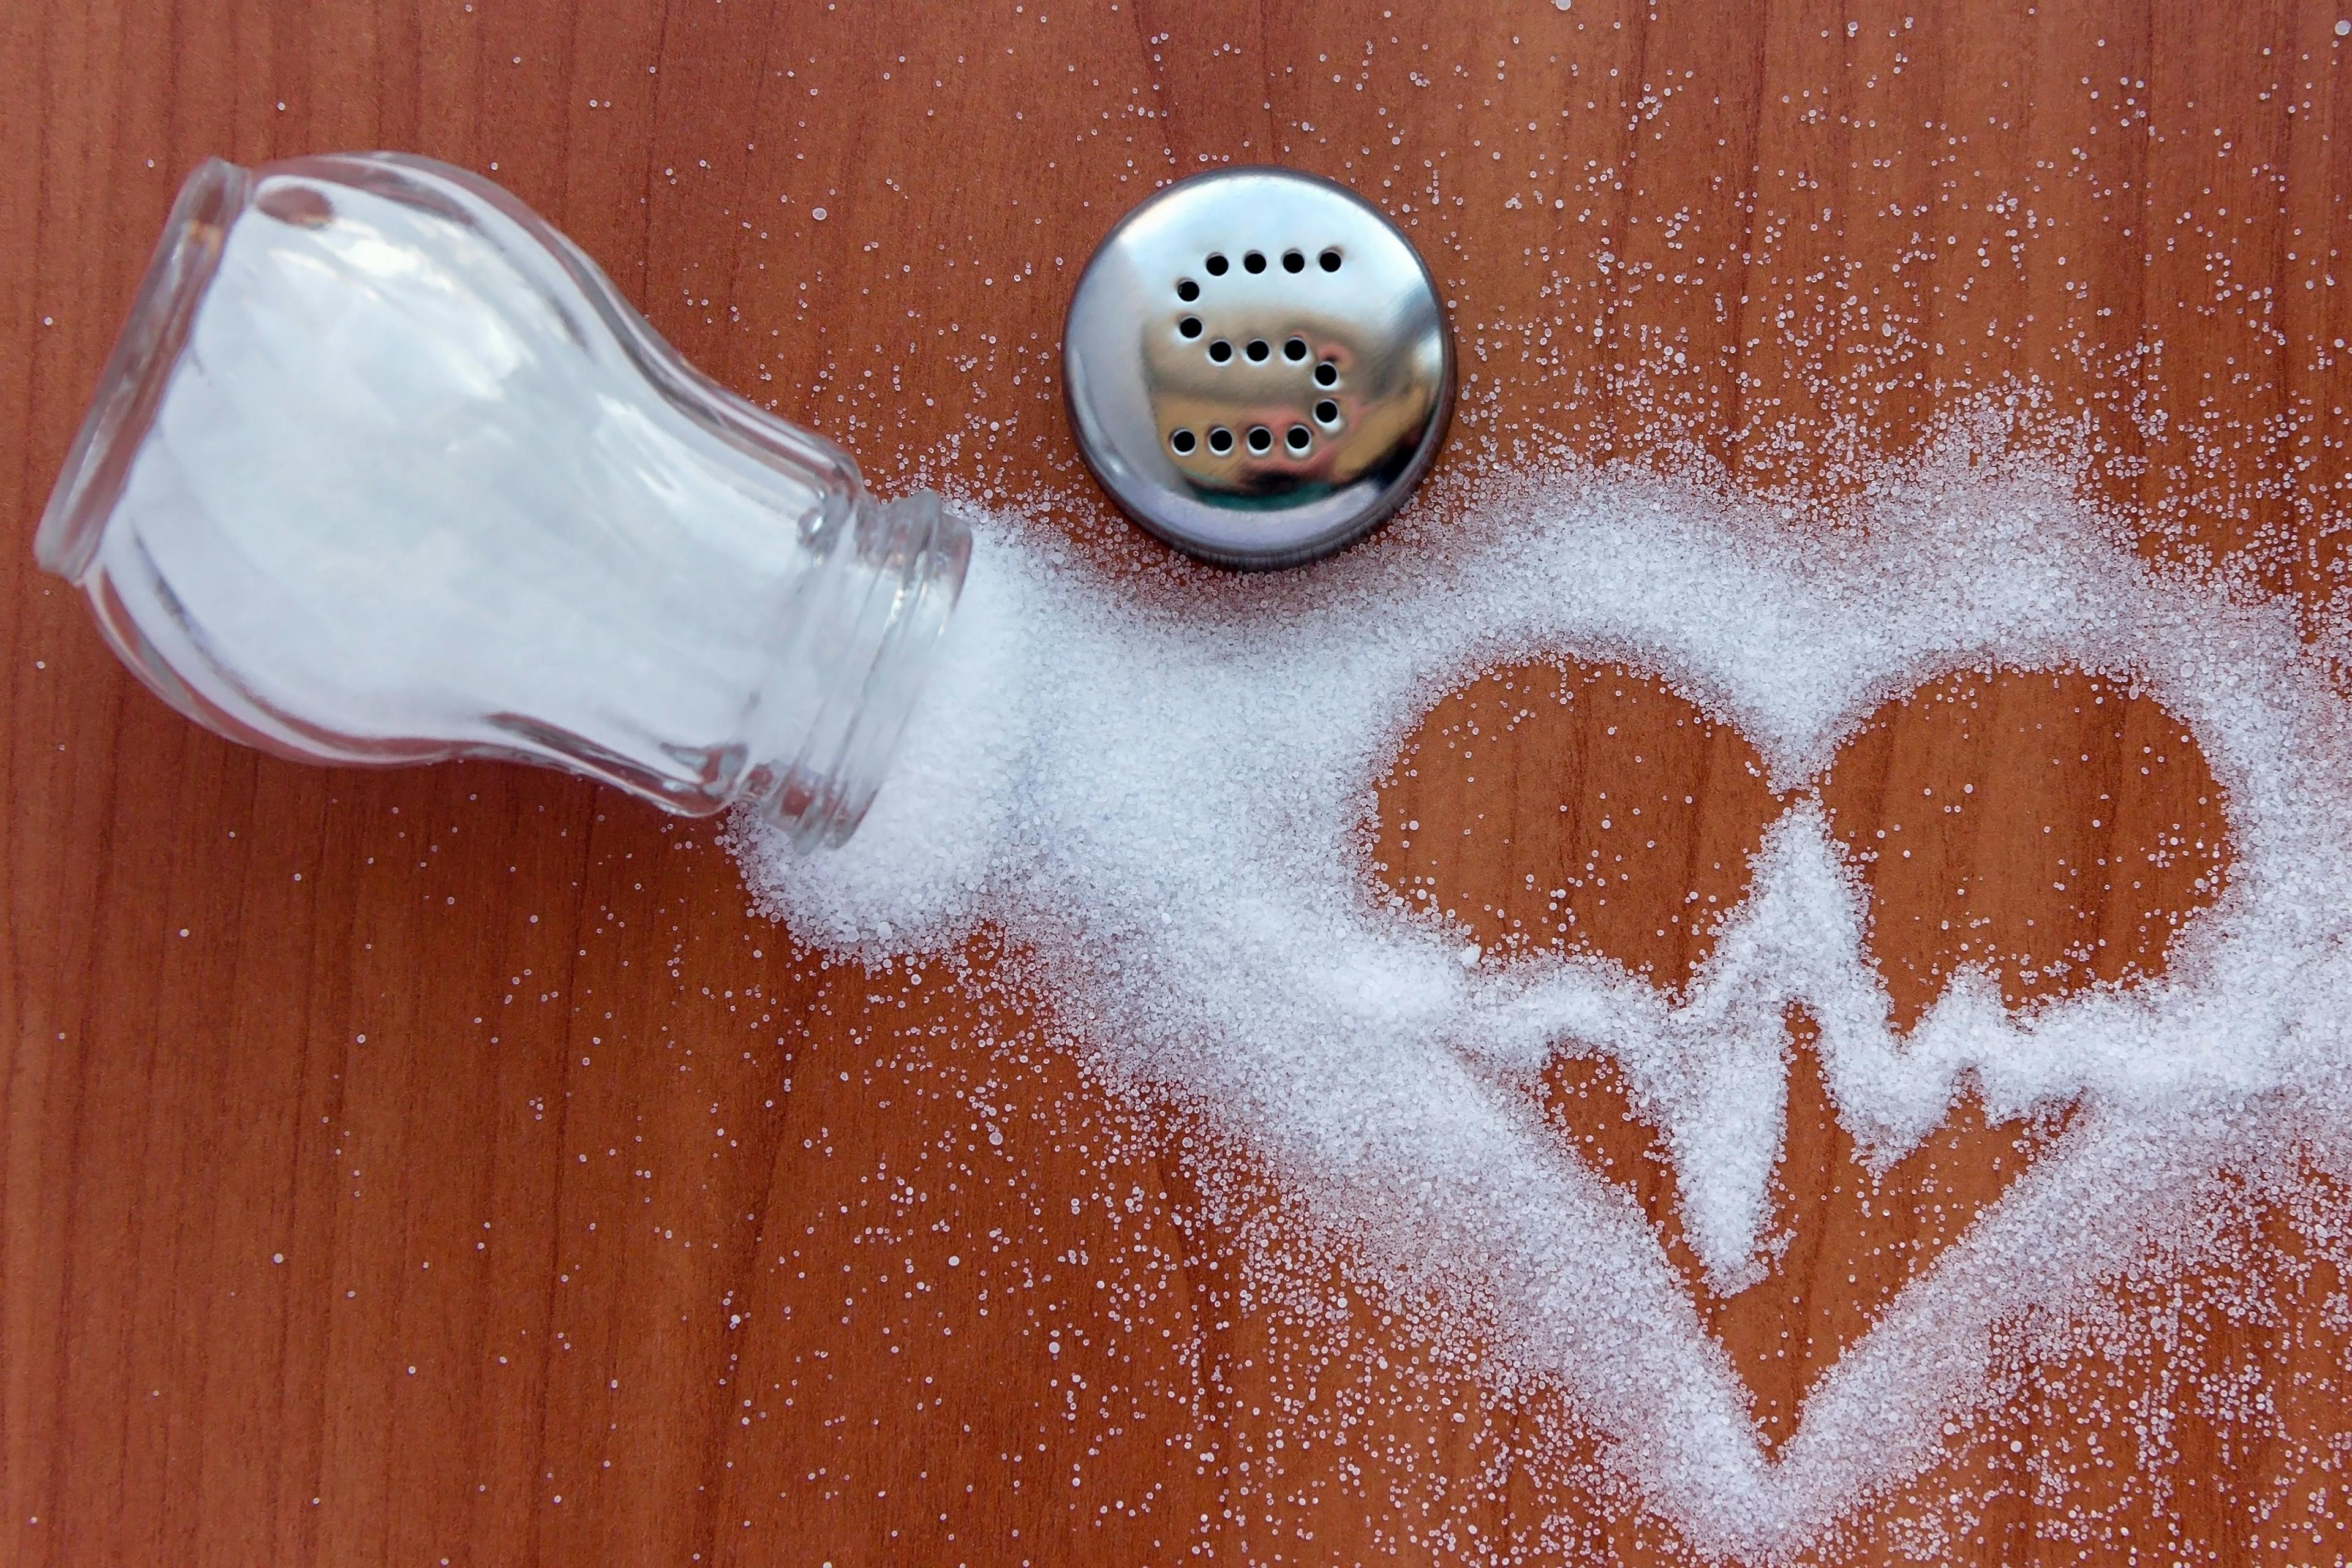 Salt poured in shape of heart / Sharif - stock.adobe.com